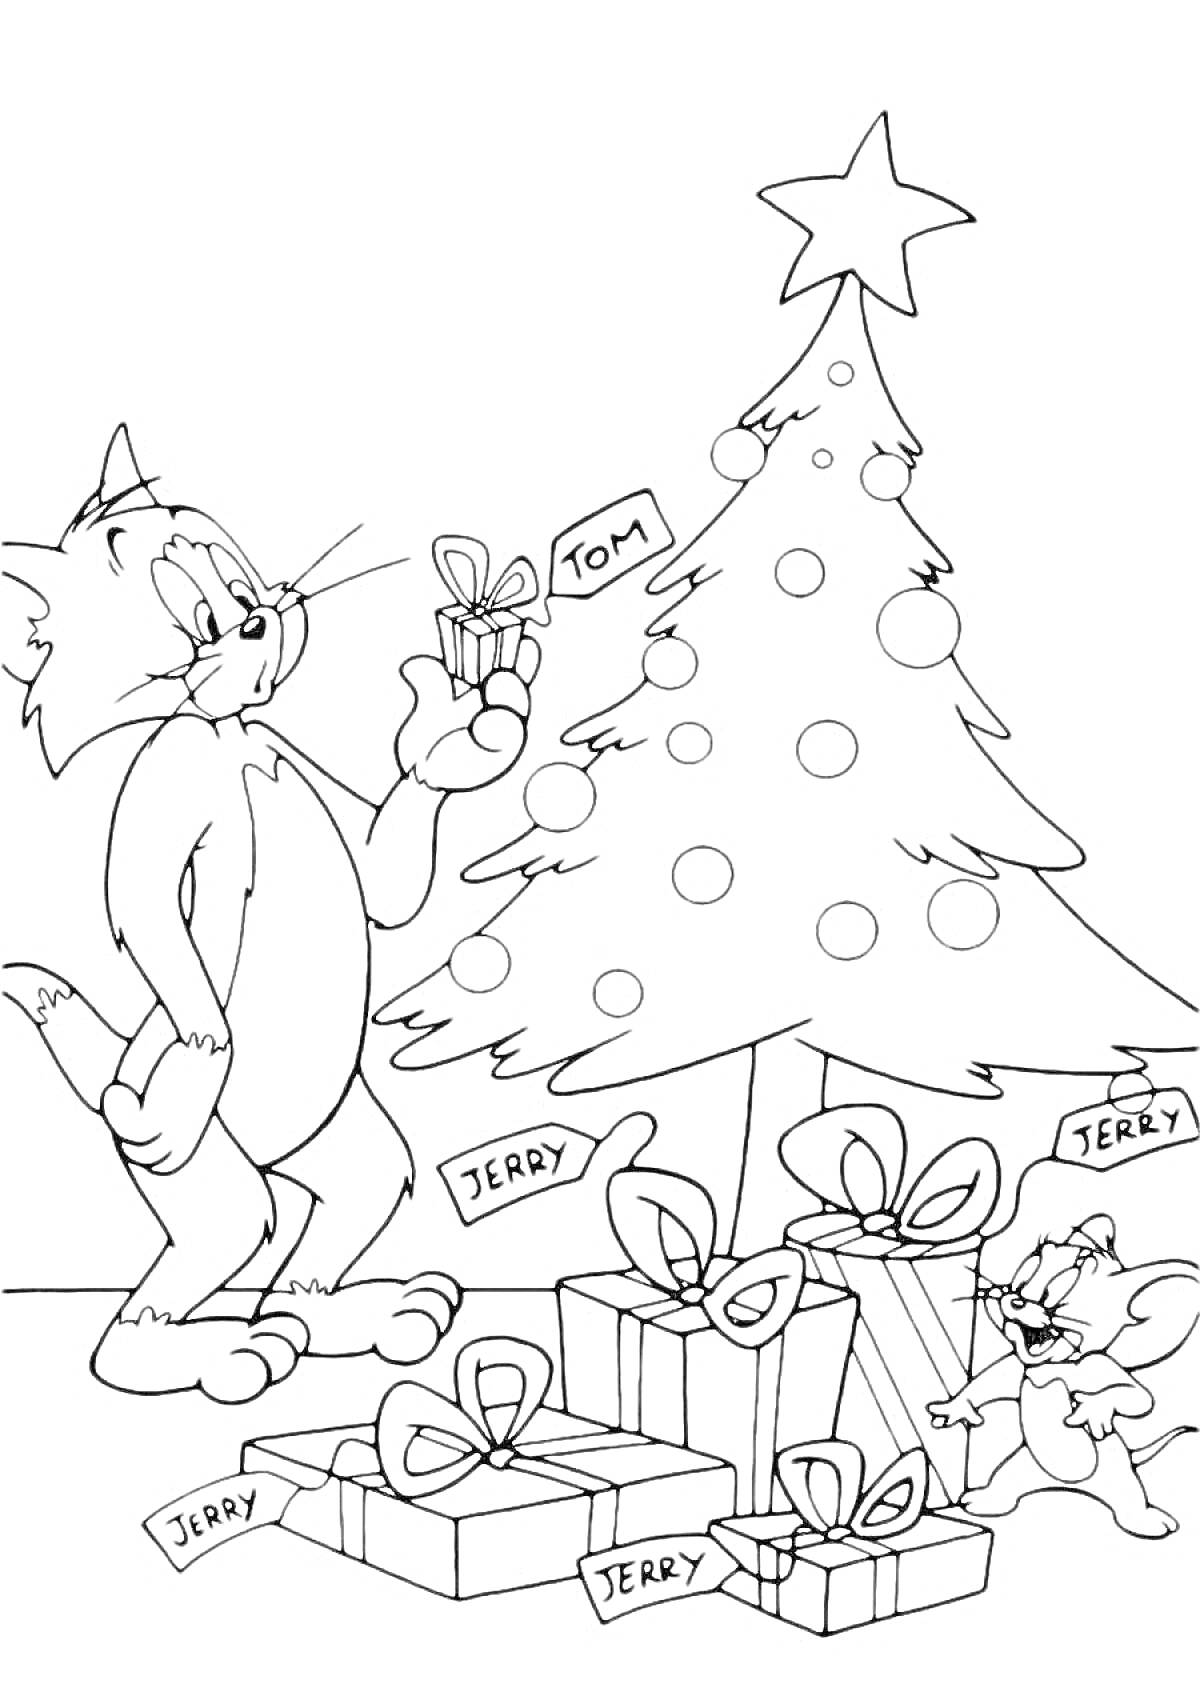 Кот и мышонок возле новогодней ёлки, с подарками с надписями 